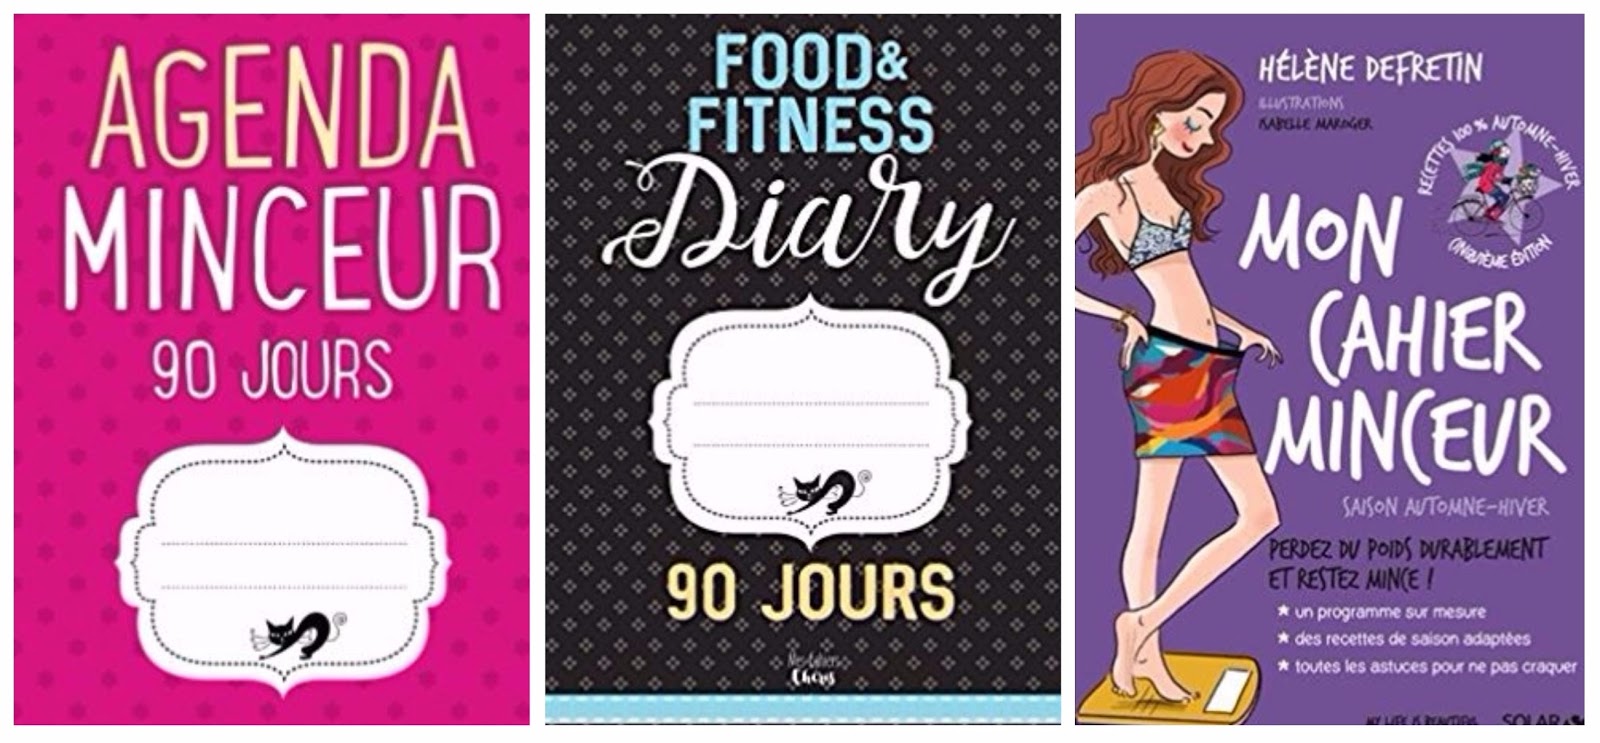 Agenda Minceur: Cahier pour régime alimentaire et sportif de 90